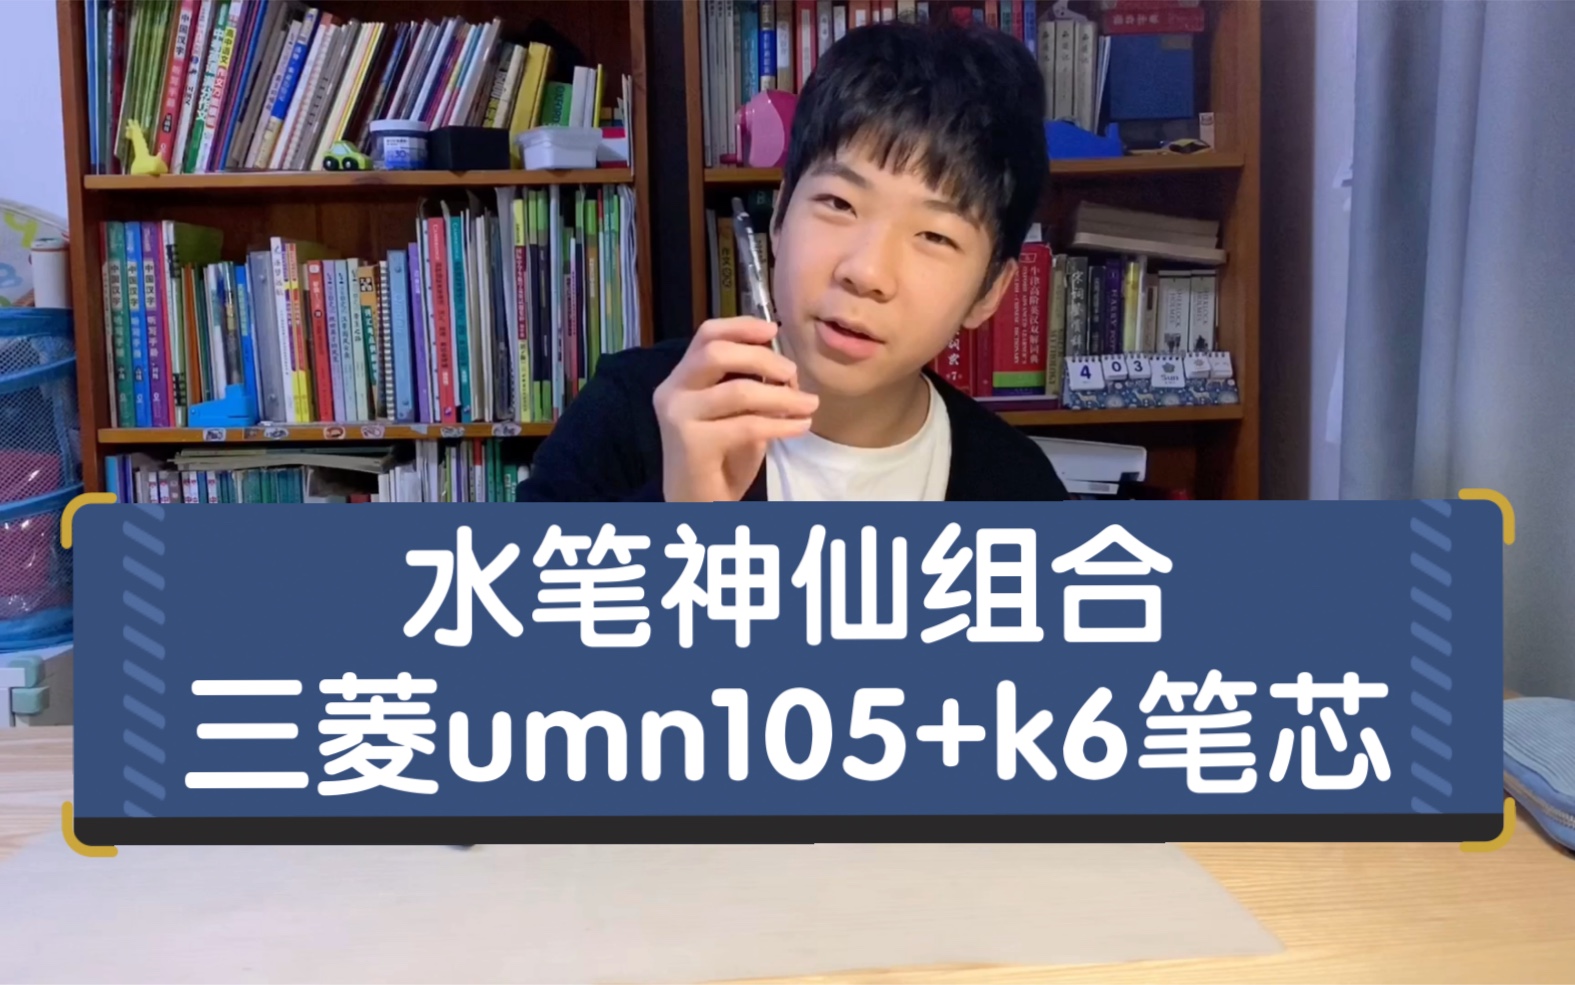 水笔神仙组合：三菱umn105+k6笔芯